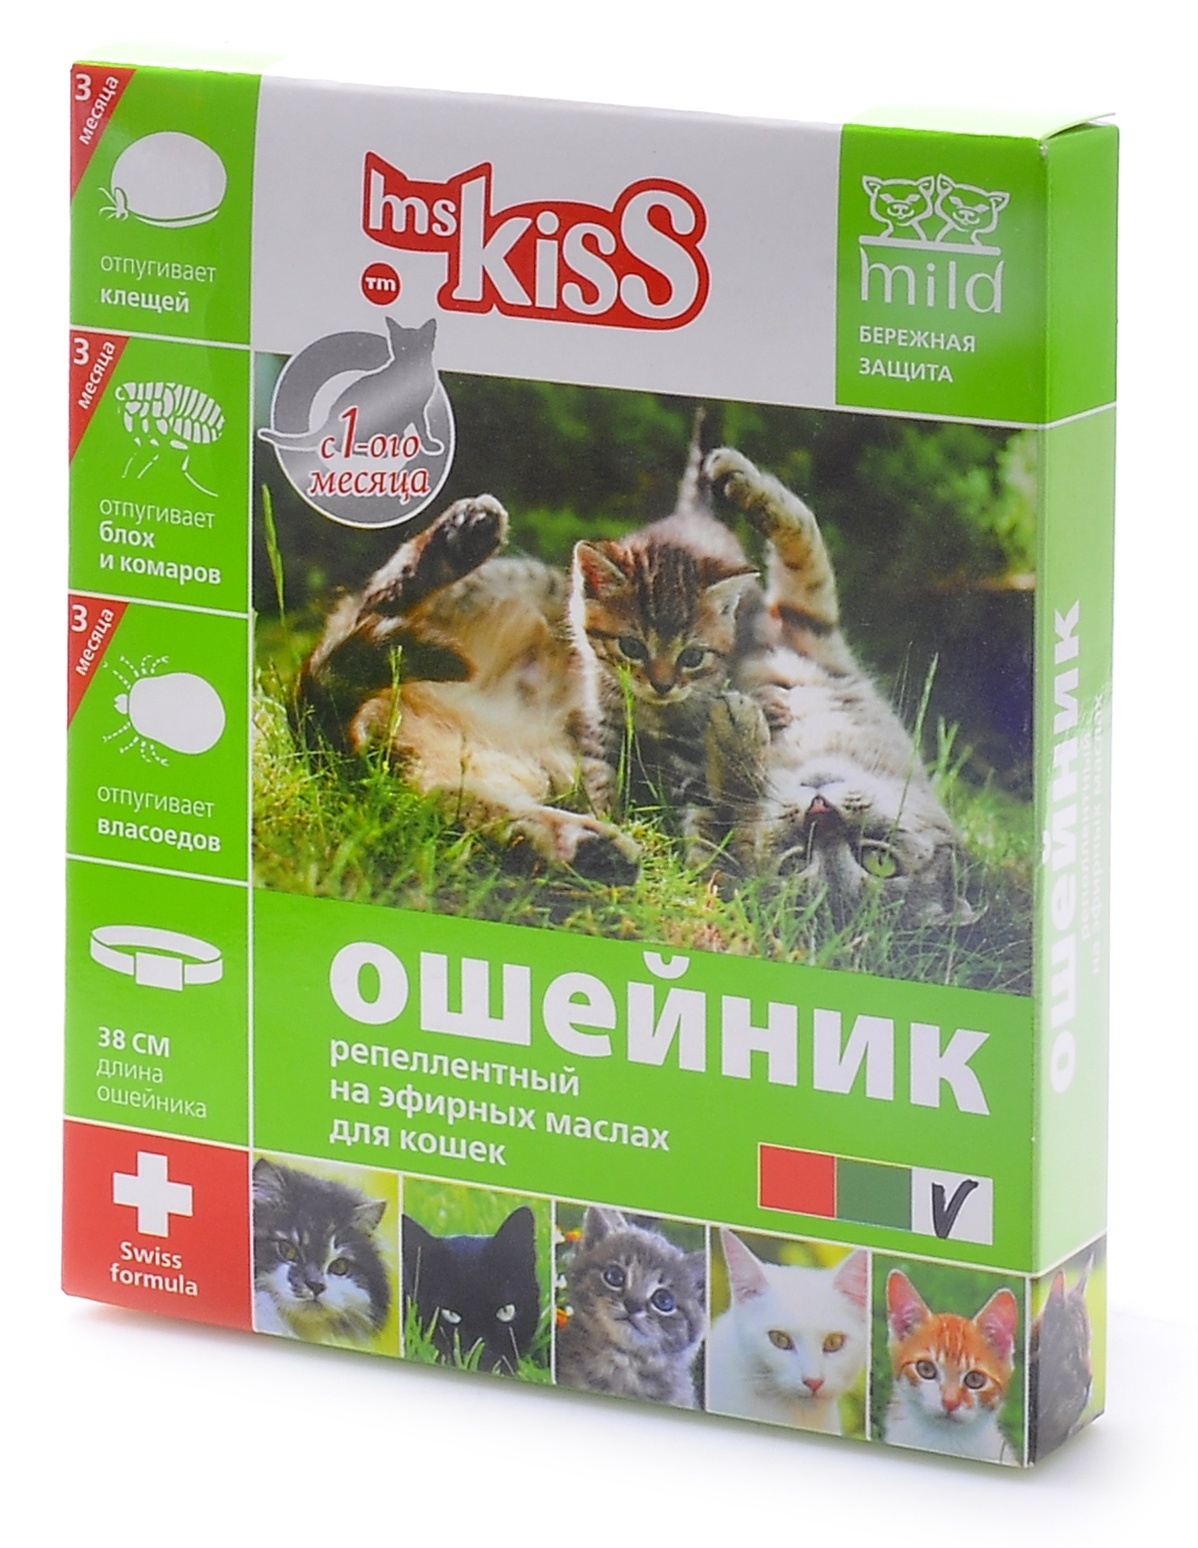 Ms.Kiss Ms.Kiss ошейник от блох, клещей, комаров для котят с 4 недель и кошек, 38 см (50 г) ms kiss ms kiss ошейник от блох клещей комаров для котят с 4 недель и кошек 38 см зеленый защита 3 мес 50 г